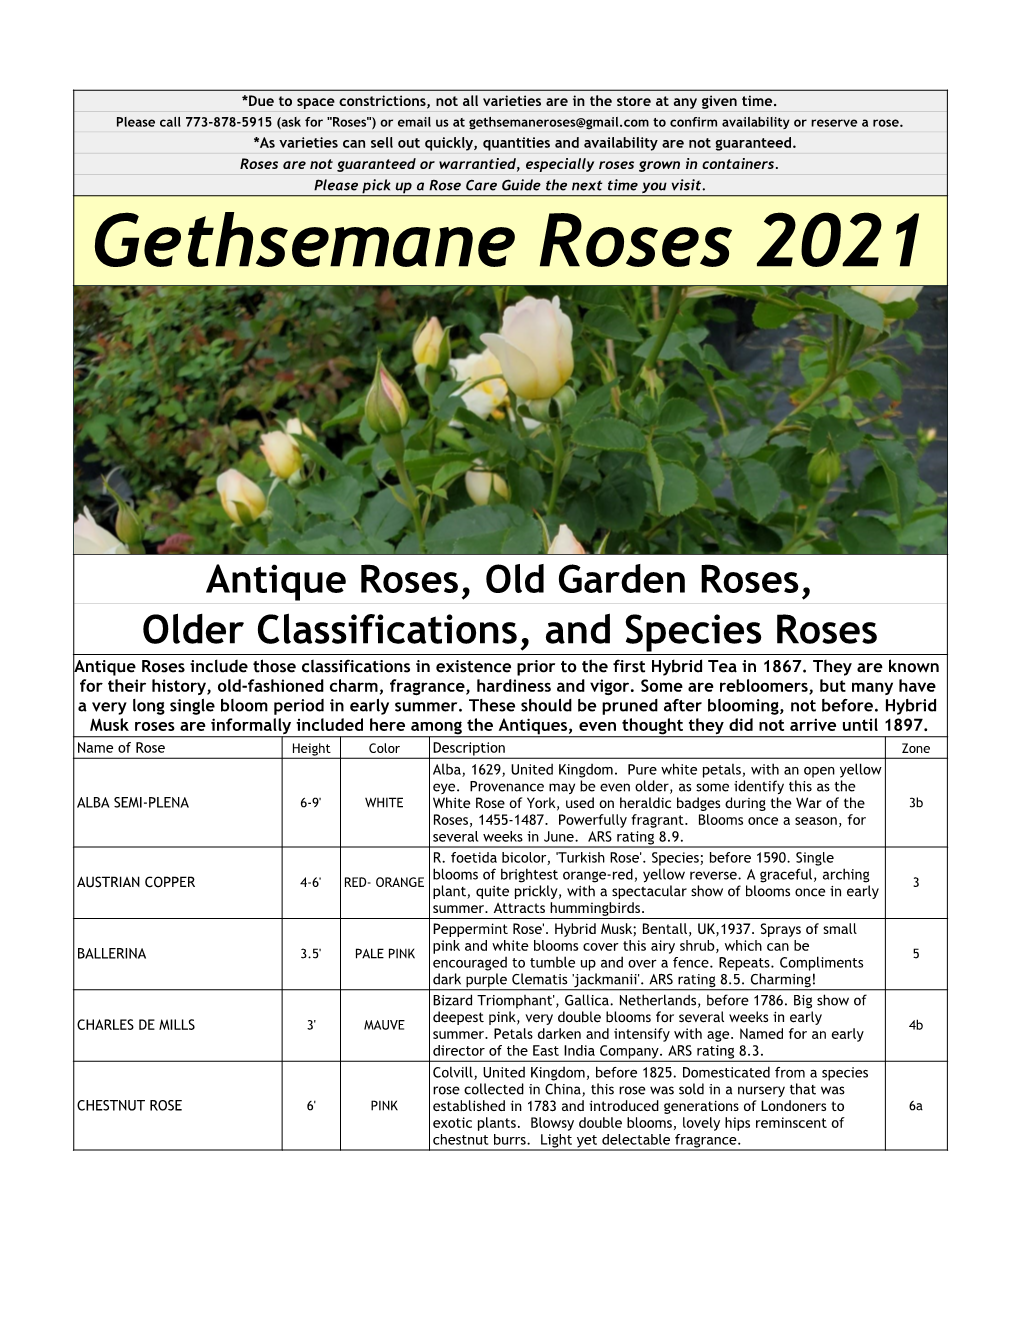 Gethsemane Roses 2021